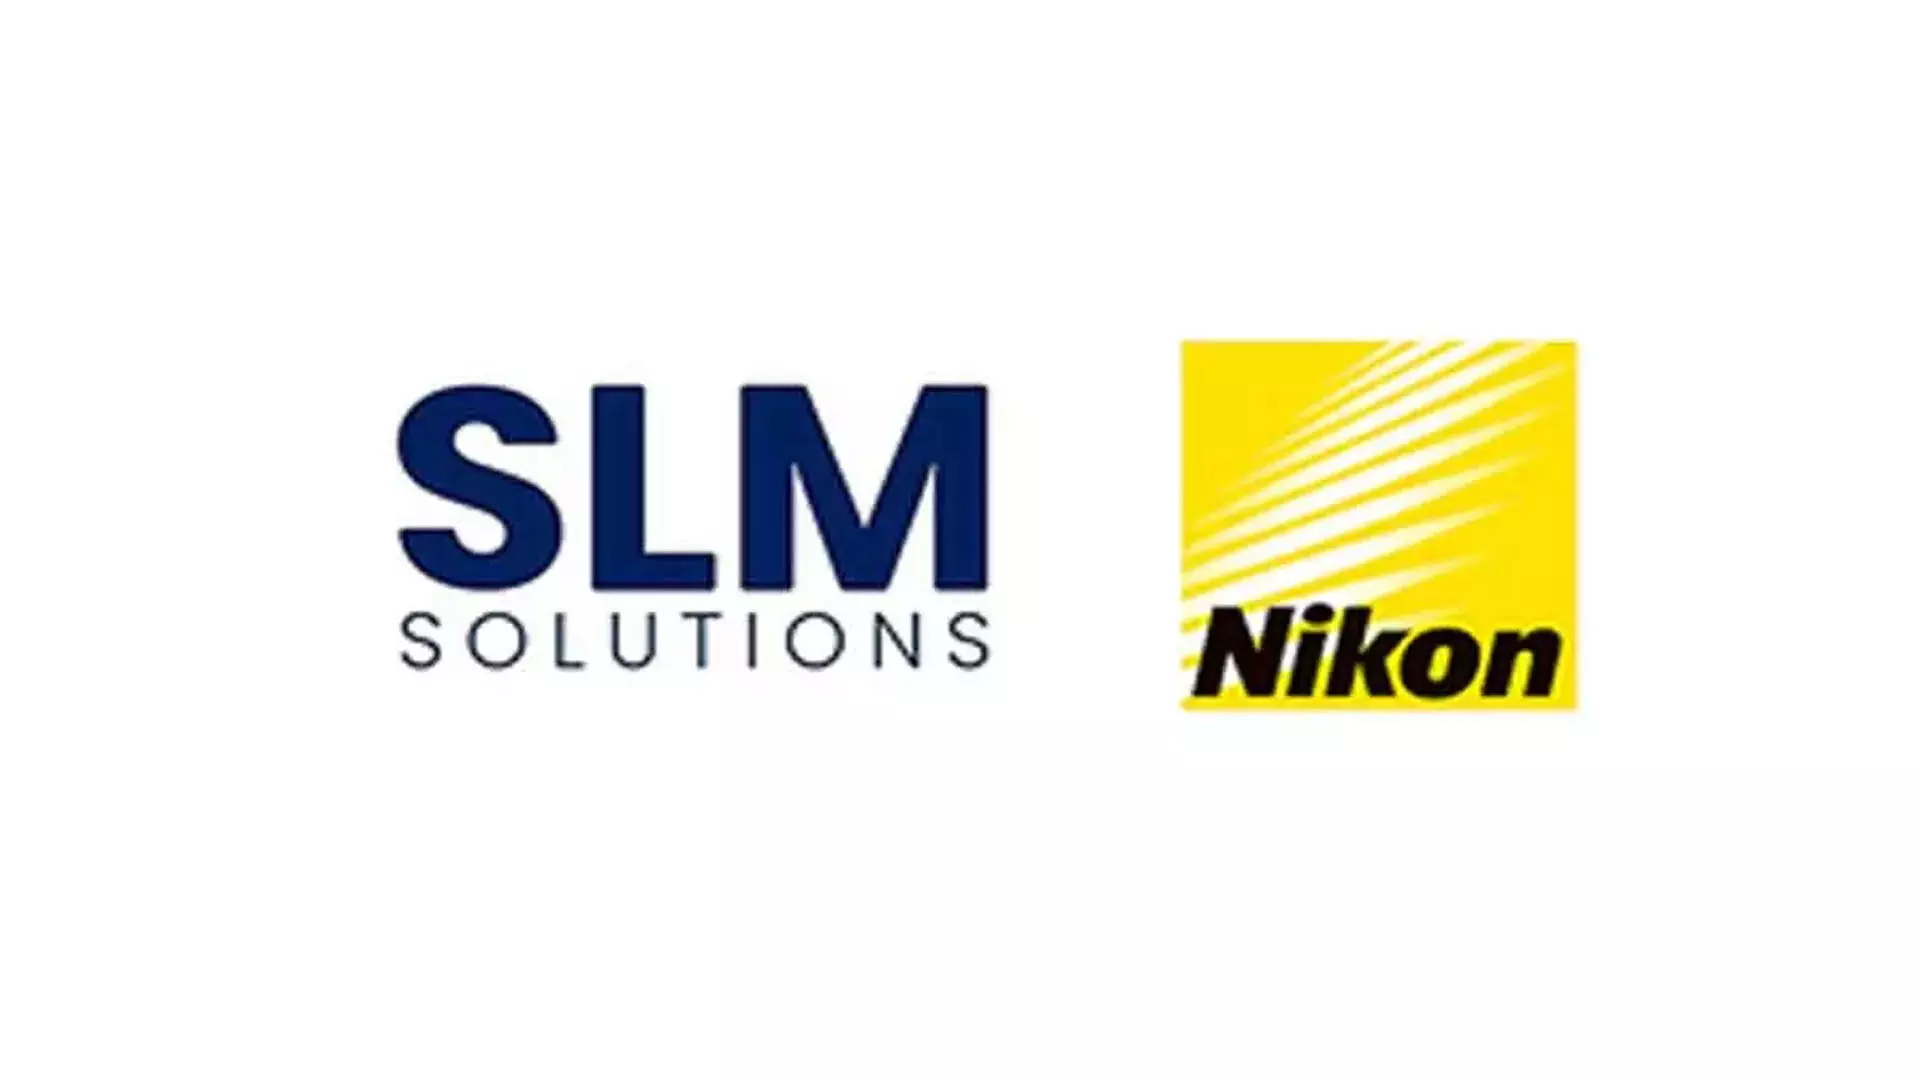 Wipro 3डी, निकॉन SLM ने एडिटिव विनिर्माण को बढ़ावा देने के लिए हाथ मिलाया